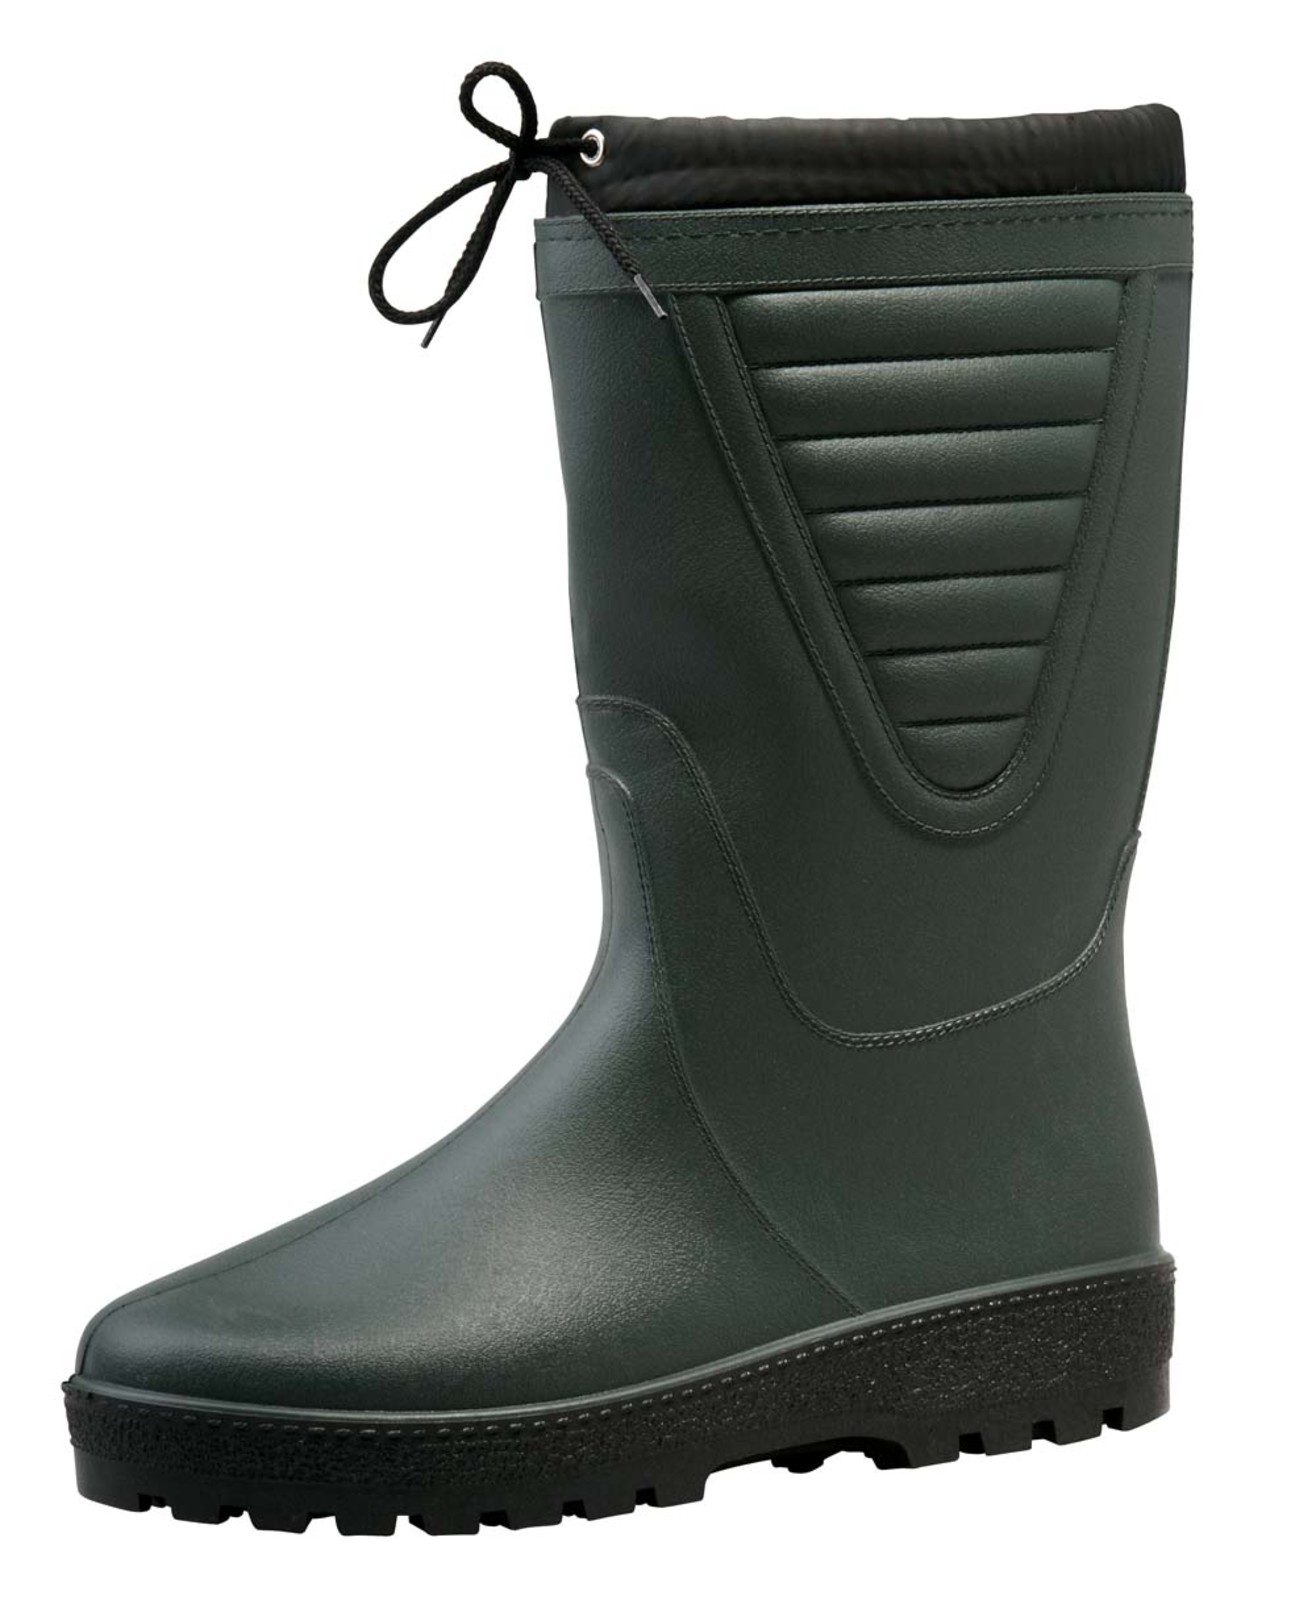 Zateplené čižmy Boots Polar - veľkosť: 48, farba: zelená